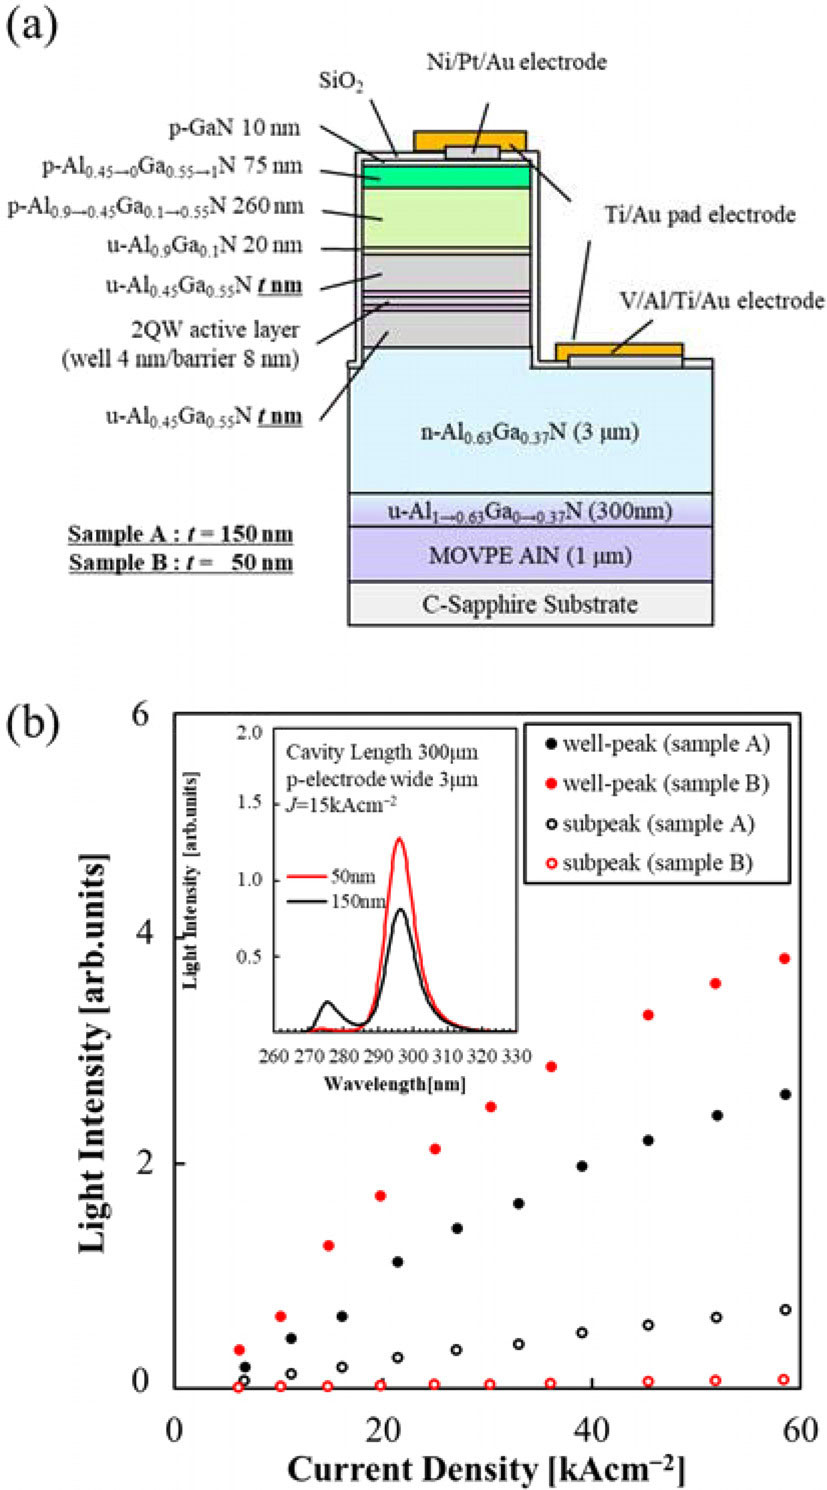 Figure 3: (a) Initial UV-B laser diode design. (b) Current density dependence of well-peak and subpeak emission intensity. Inset: emission spectrum at 15kA/cm2. 